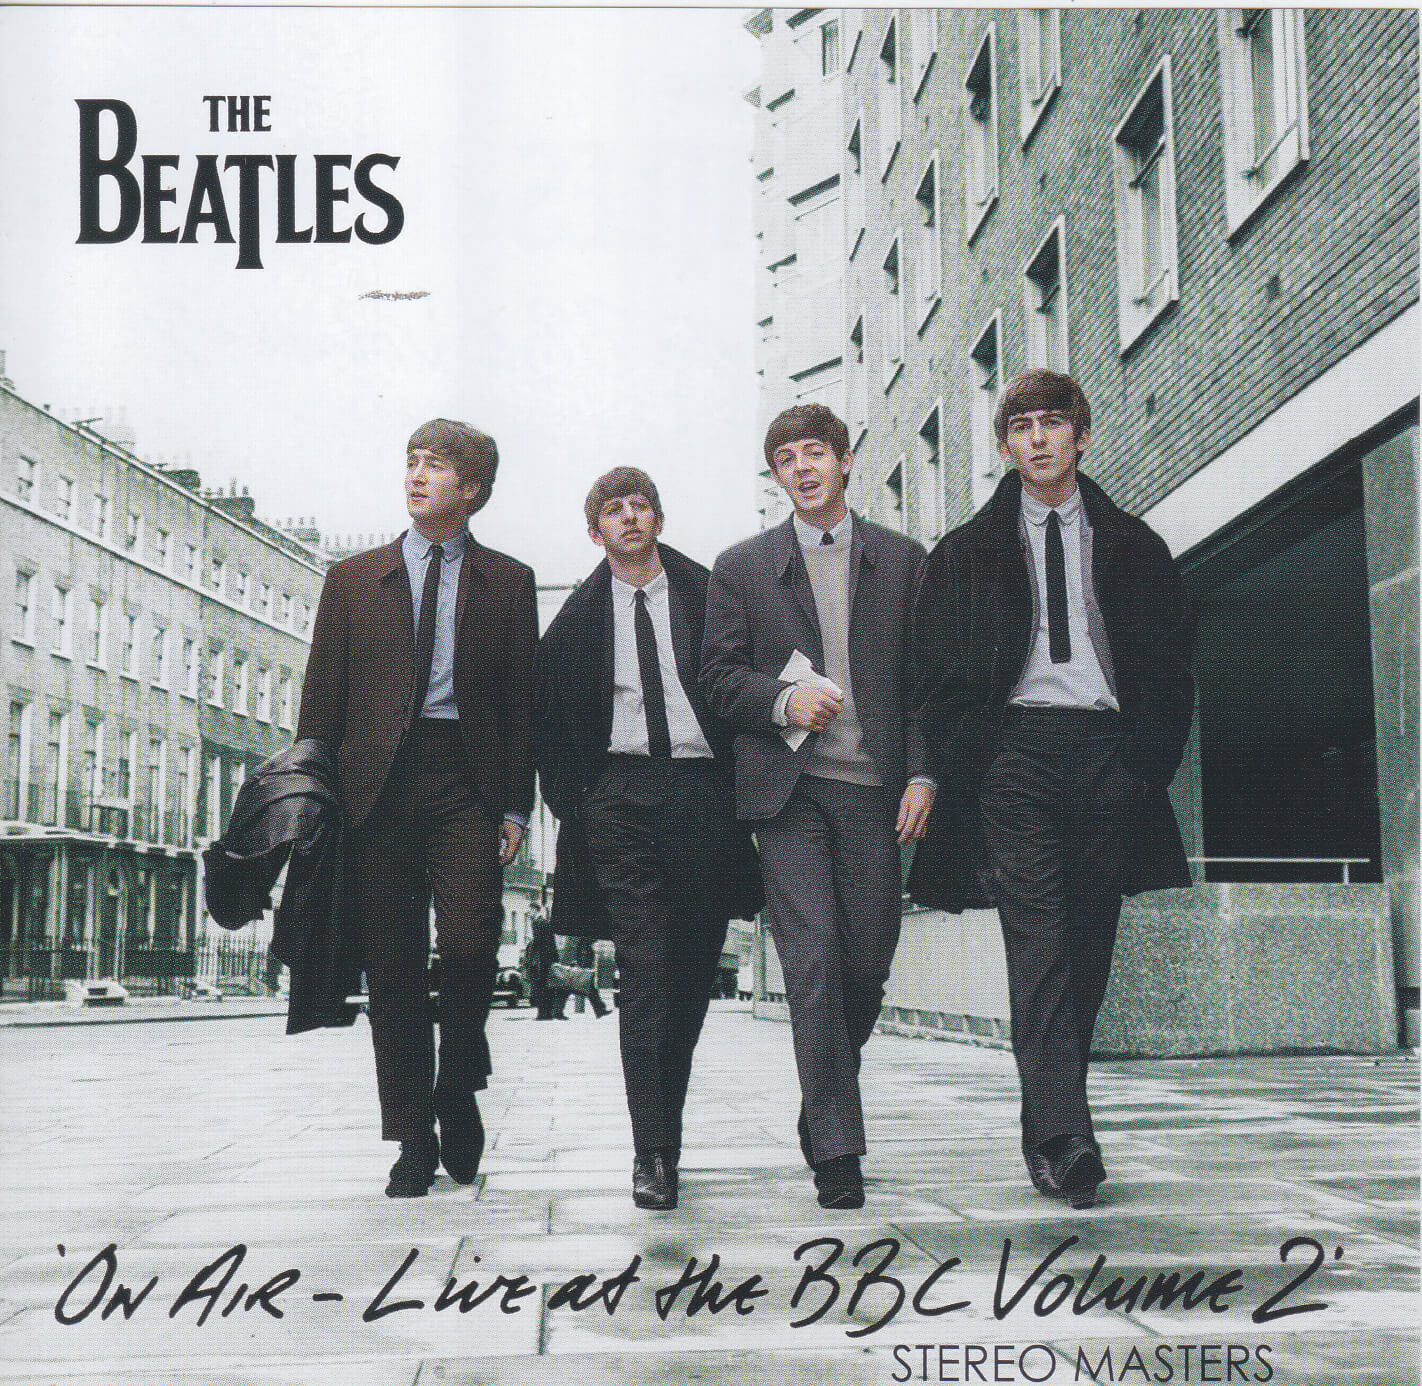 【見本盤セット】ライブアットザBBC vol.2 - The Beatles